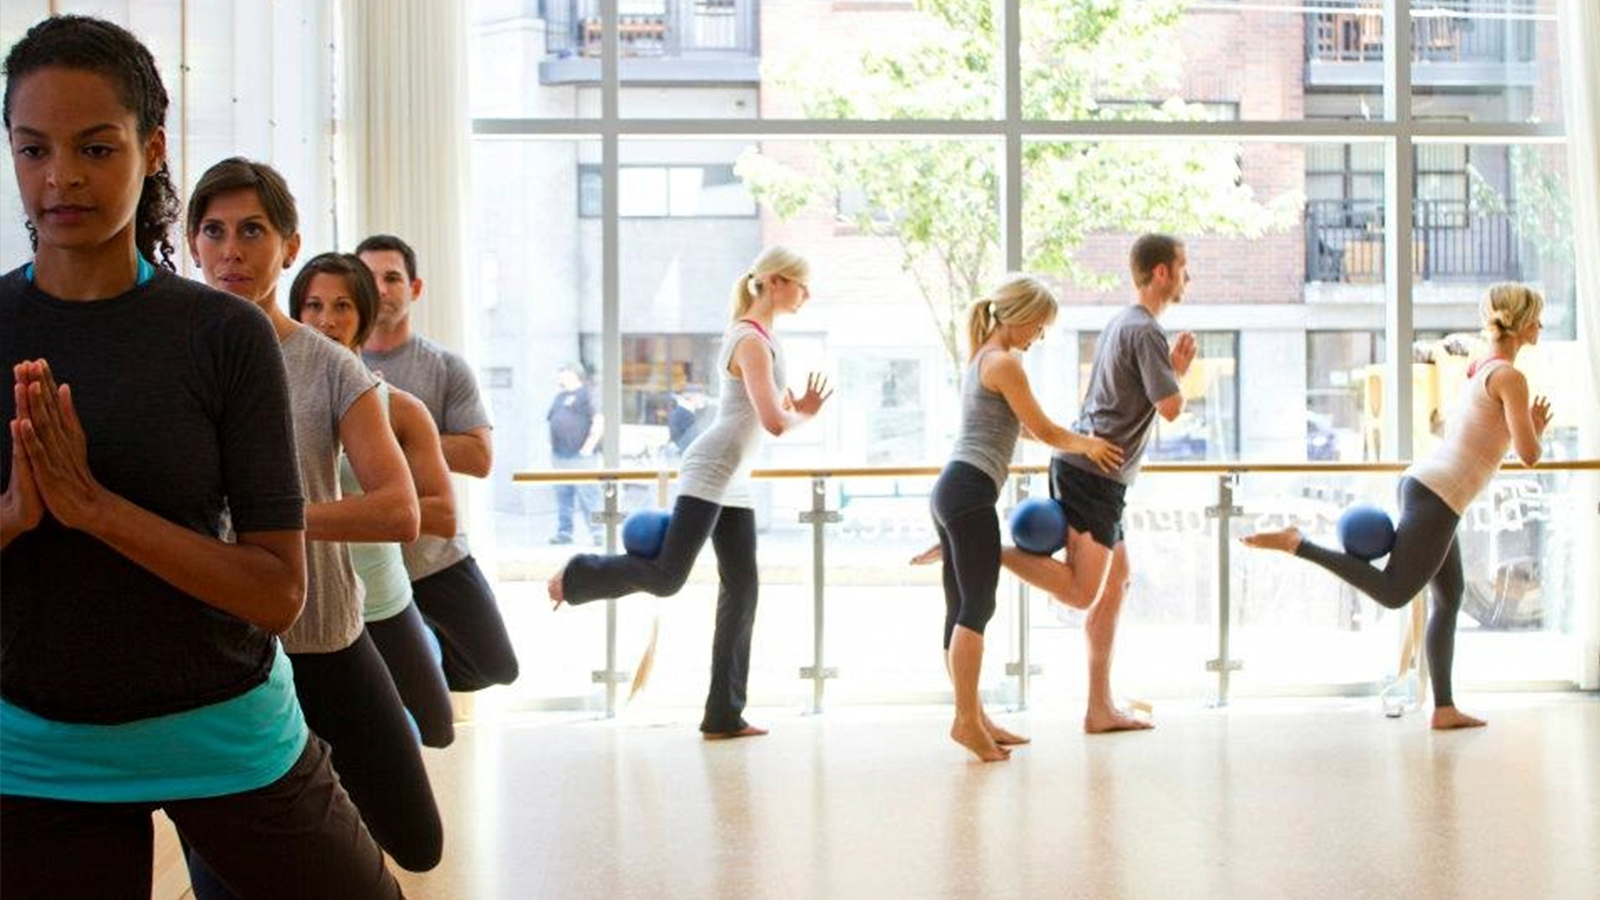 Piloxing Barre heißt ein neues Fitnessprogramm, bei dem Elemente aus dem klassischen Ballett mit Standing Pilates, Boxbewegungen und Cardiosequenzen kombiniert werden